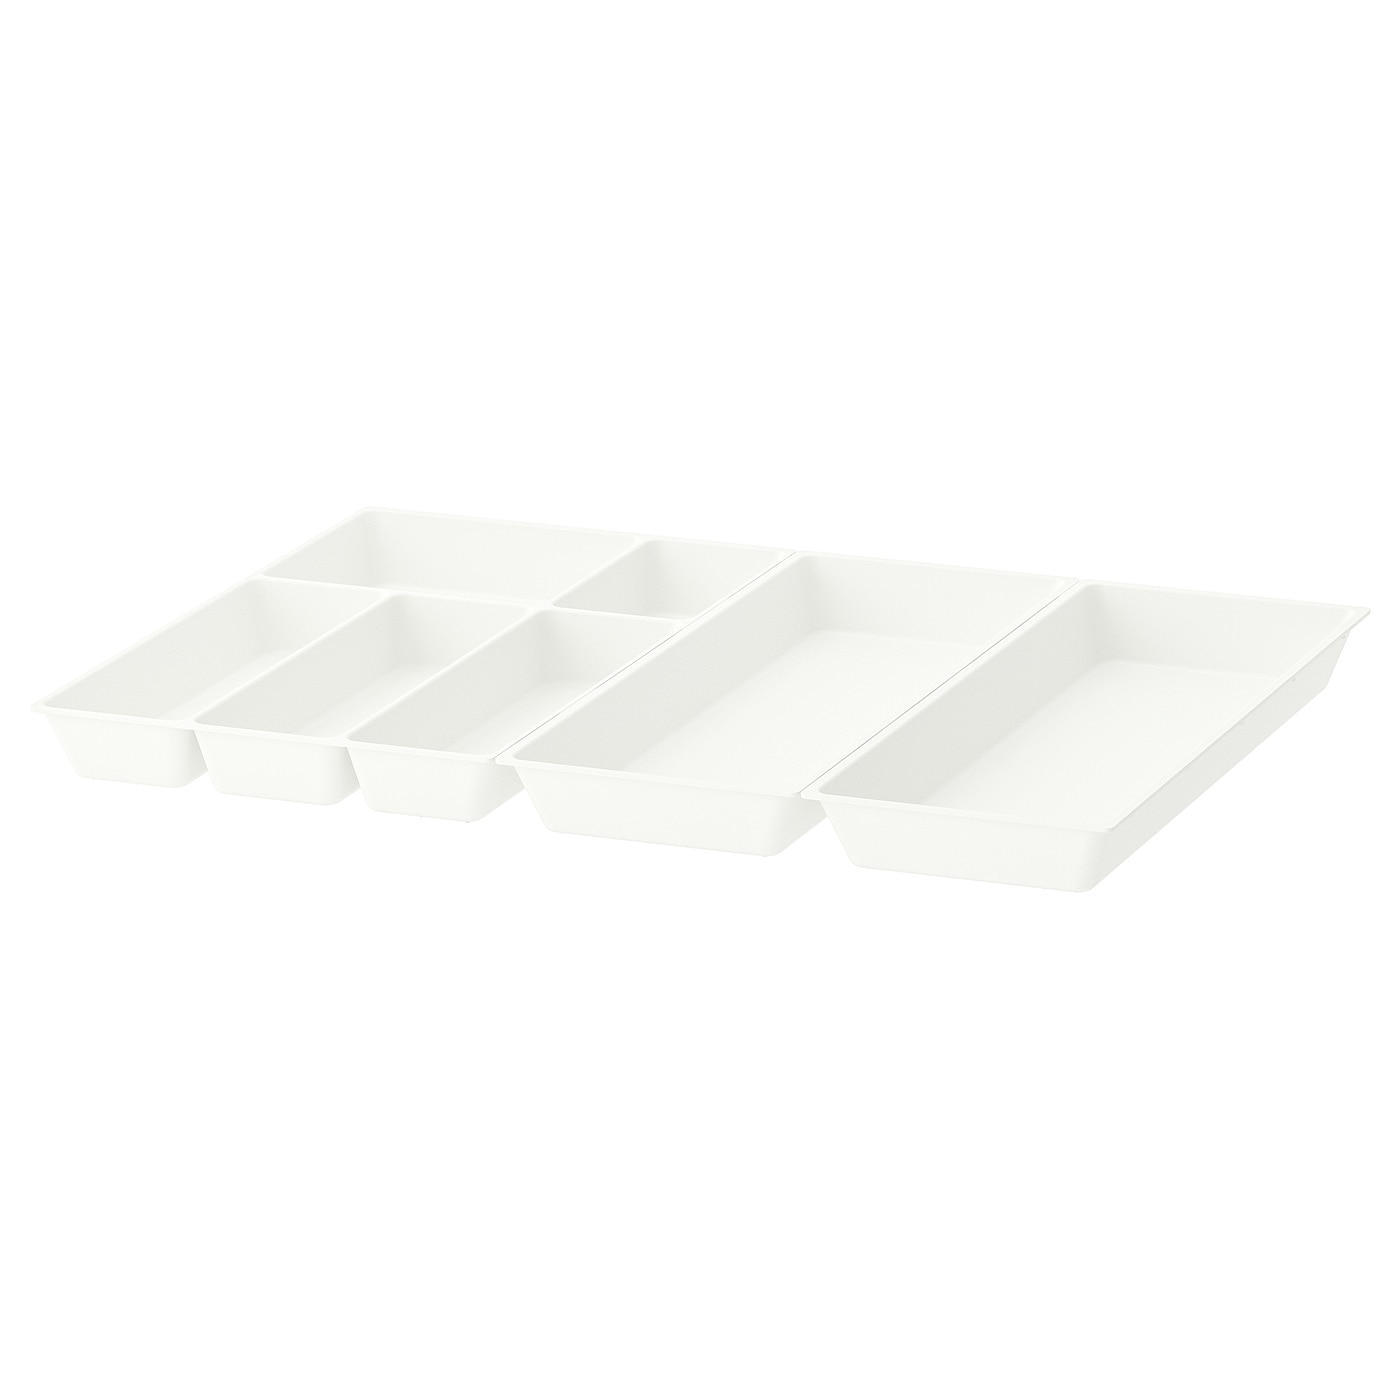 Поднос для столовых приборов - IKEA UPPDATERA,  72x50 см, белый, УППДАТЕРА ИКЕА